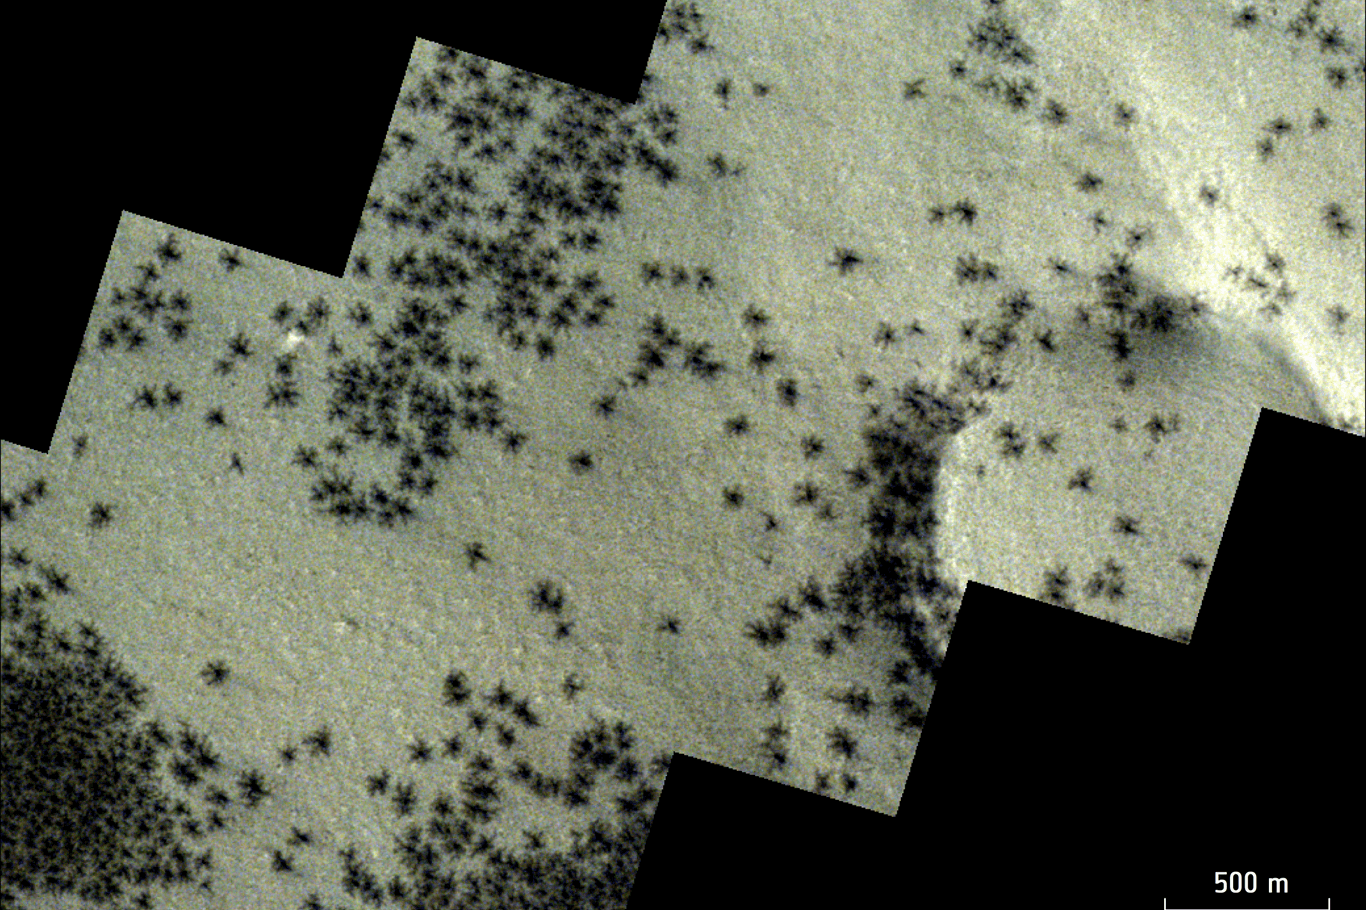 Die spinnenförmigen Strukturen sind über der südlichen Polarregion des Mars verstreut.